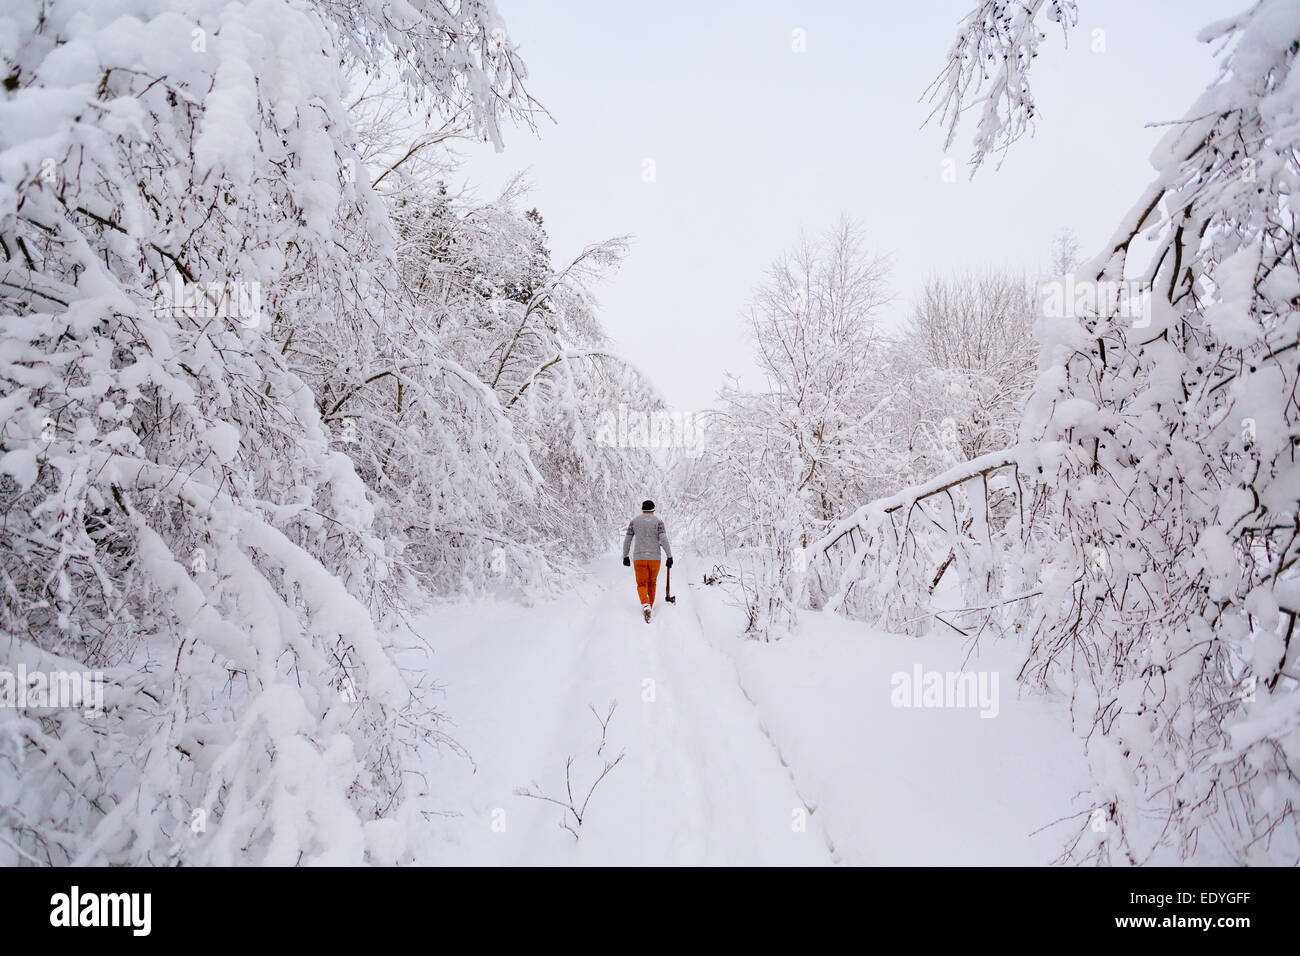 Lumberjack walks in a snowy forest Stock Photo